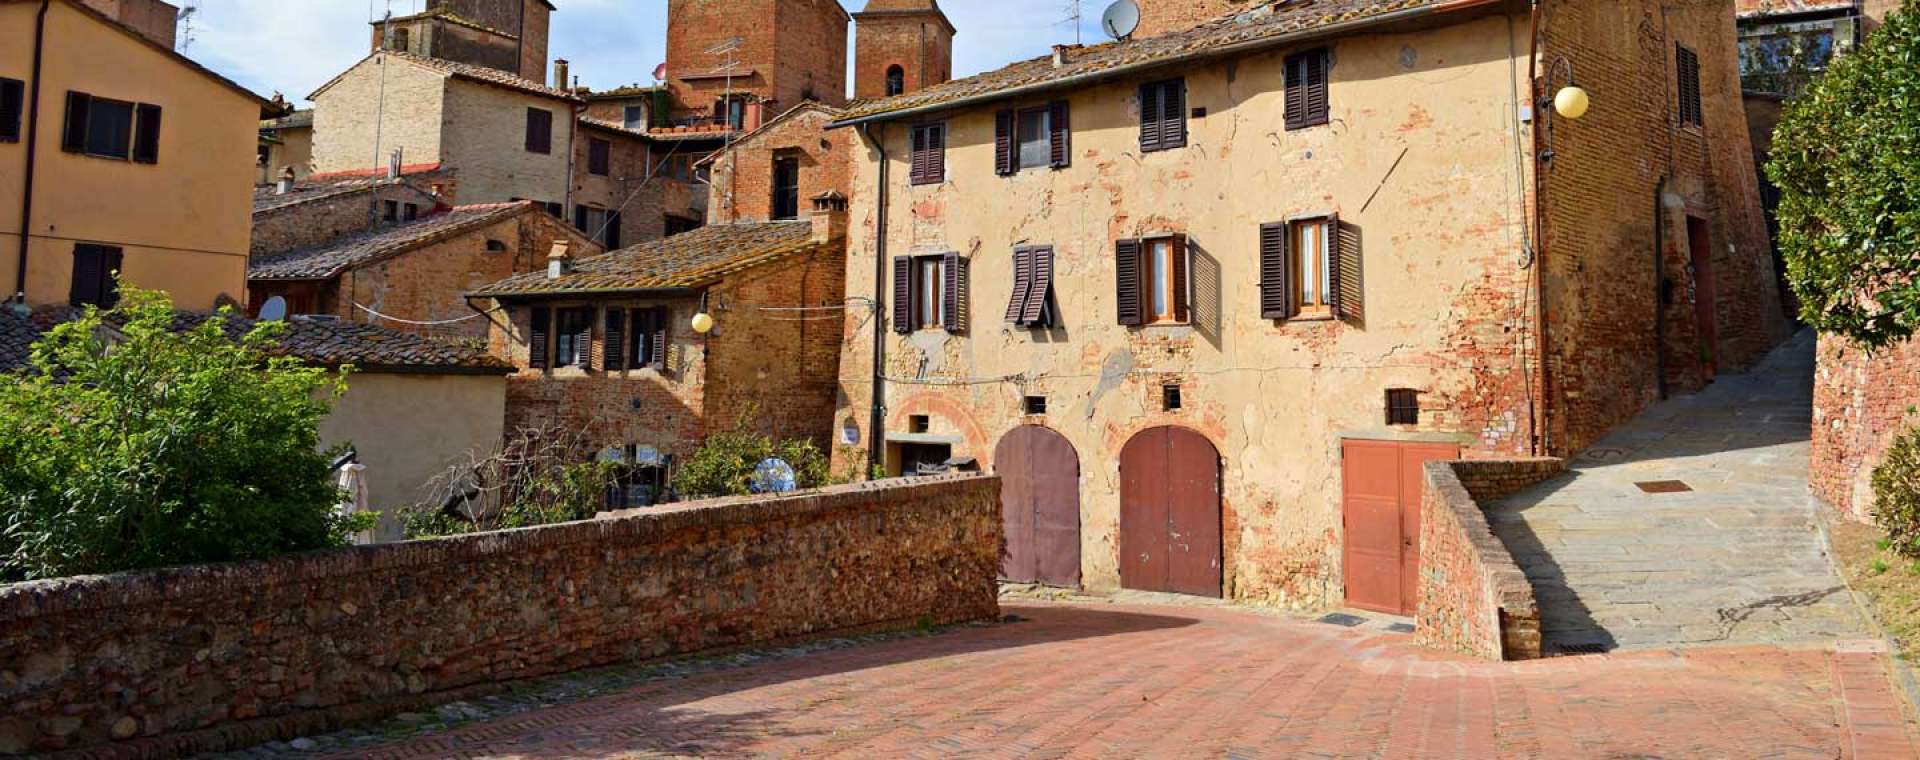 Certaldo Travel Guide, Tuscany